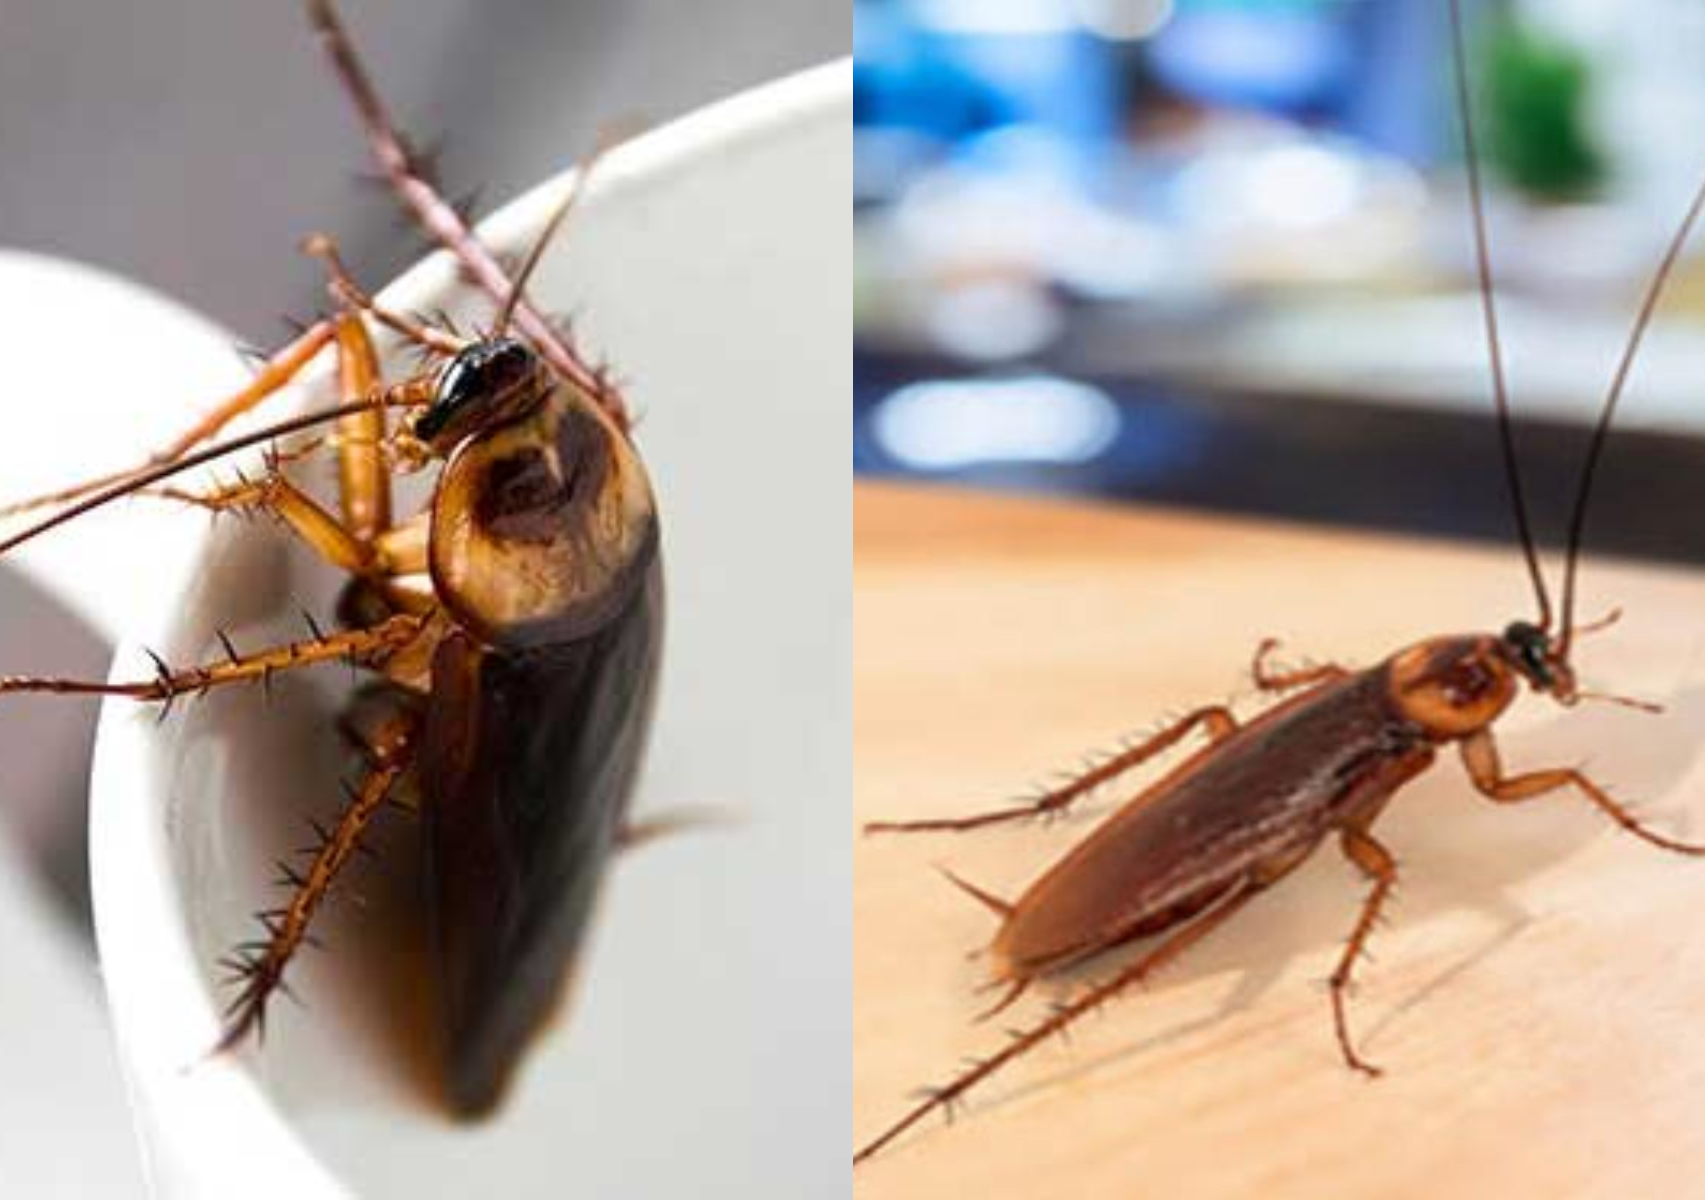 Μεγάλες καφέ κατσαρίδες στο σπίτι: Που κρύβονται και πως να τις εξοντώσετε οριστικά